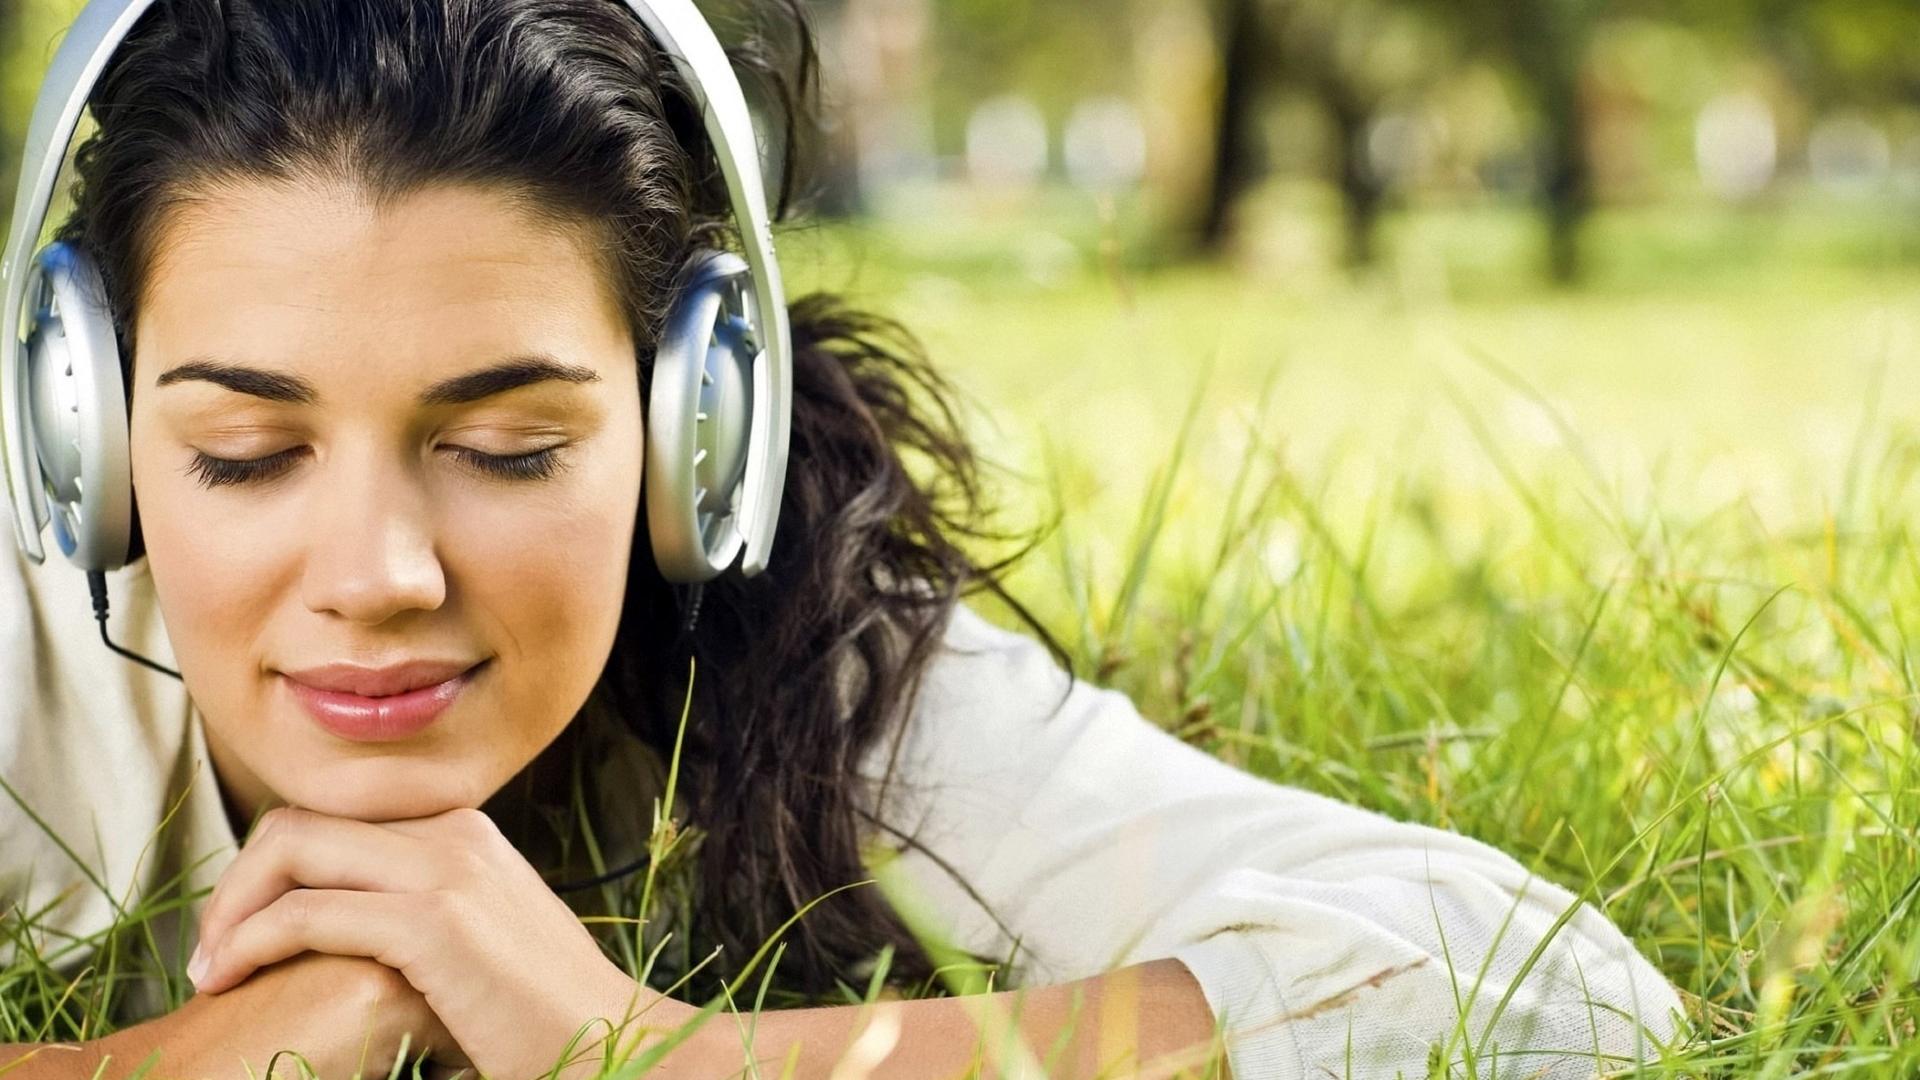 women-headphones-brunettes-photography-grass-girls-us-229124 | Top ...